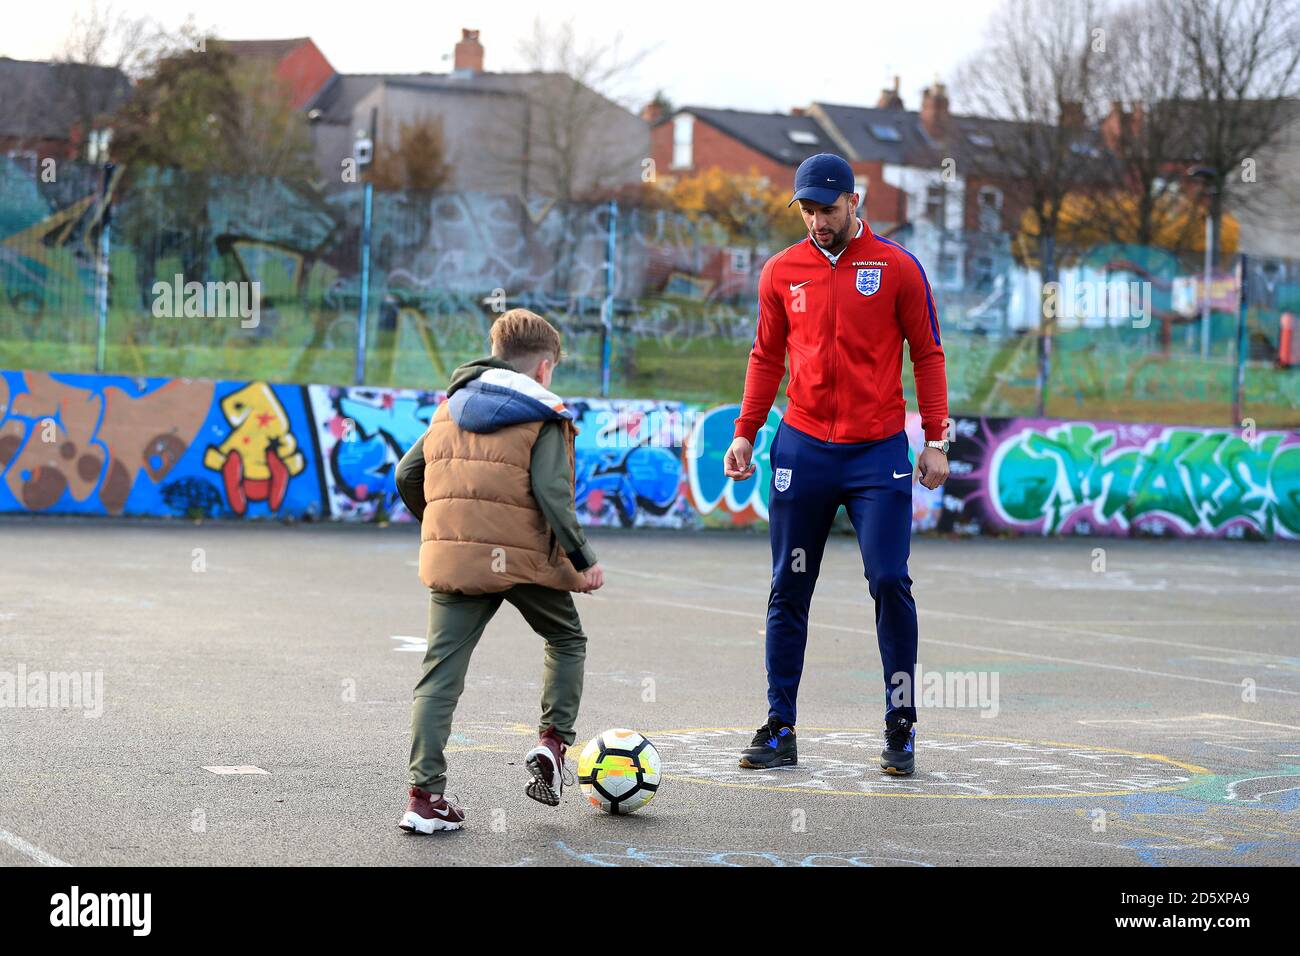 Der englische Fußballspieler Kyle Walker wurde von Lidl in seine Heimatstadt Sheffield eingeladen, um einen 10-jährigen England zu treffen, der hofft, in seine Fußstapfen zu treten und die Kampagne Dream Big with Lidl des englischen Partners zu starten Stockfoto